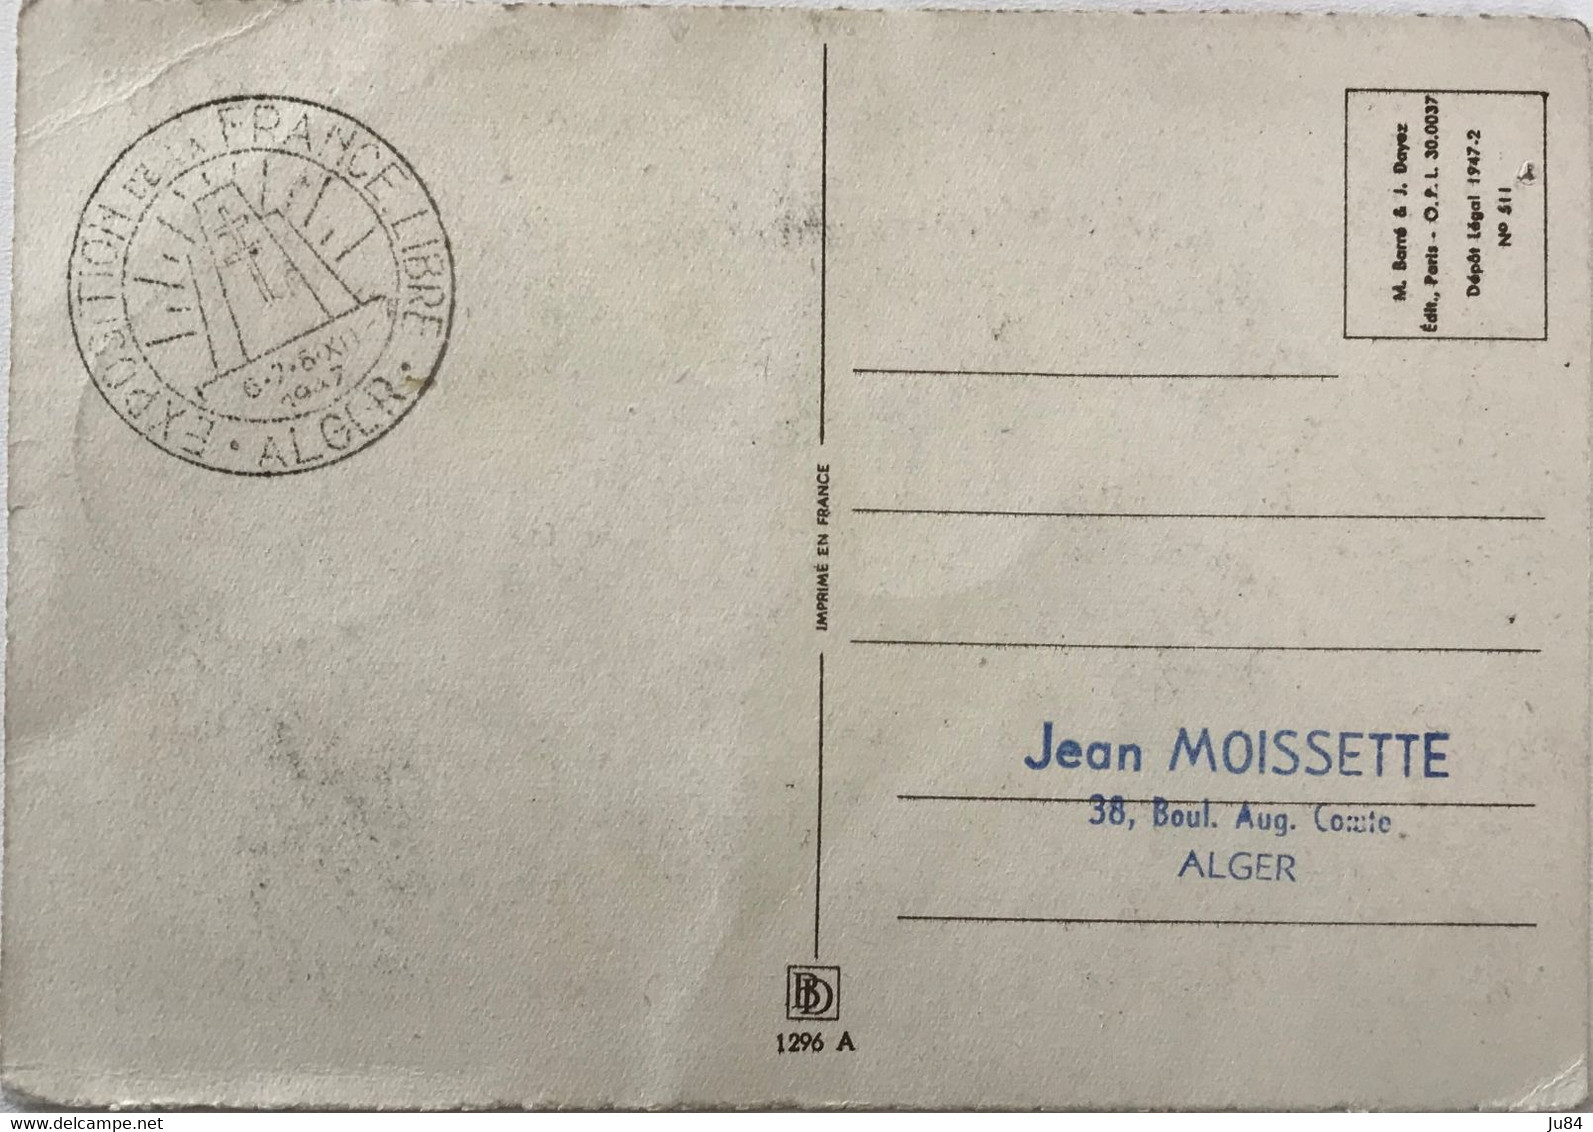 Algérie - Alger - Exposition De La France Libre Alger 1947 - Carte Postale - Décembre 1947 - FDC